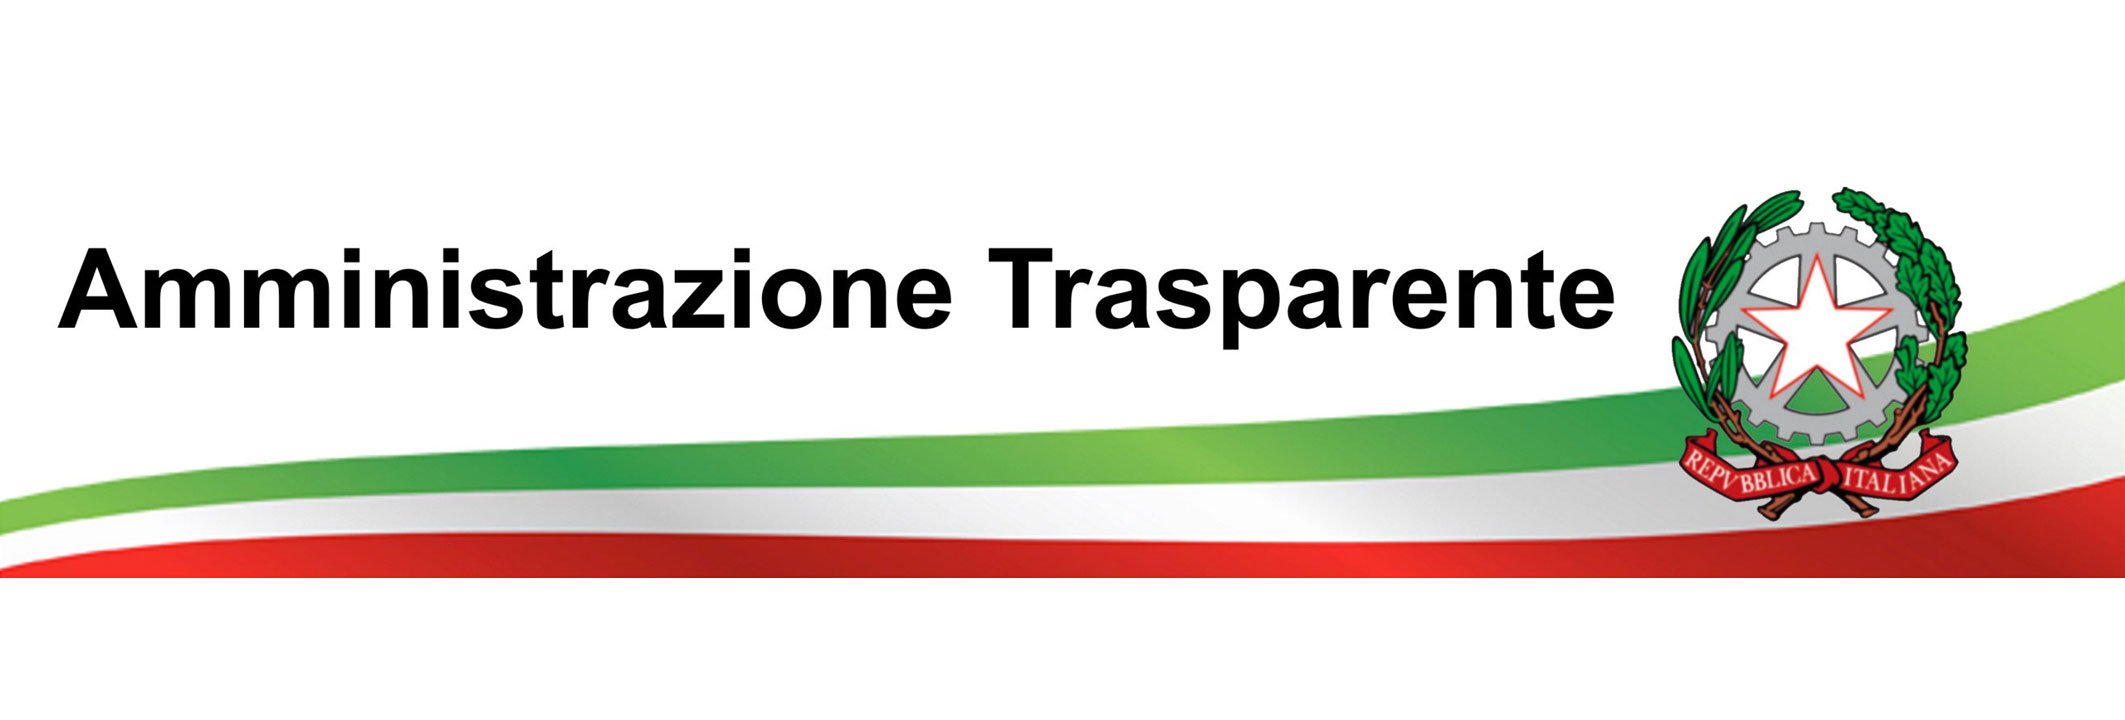 amministrazione-trasparente-banner